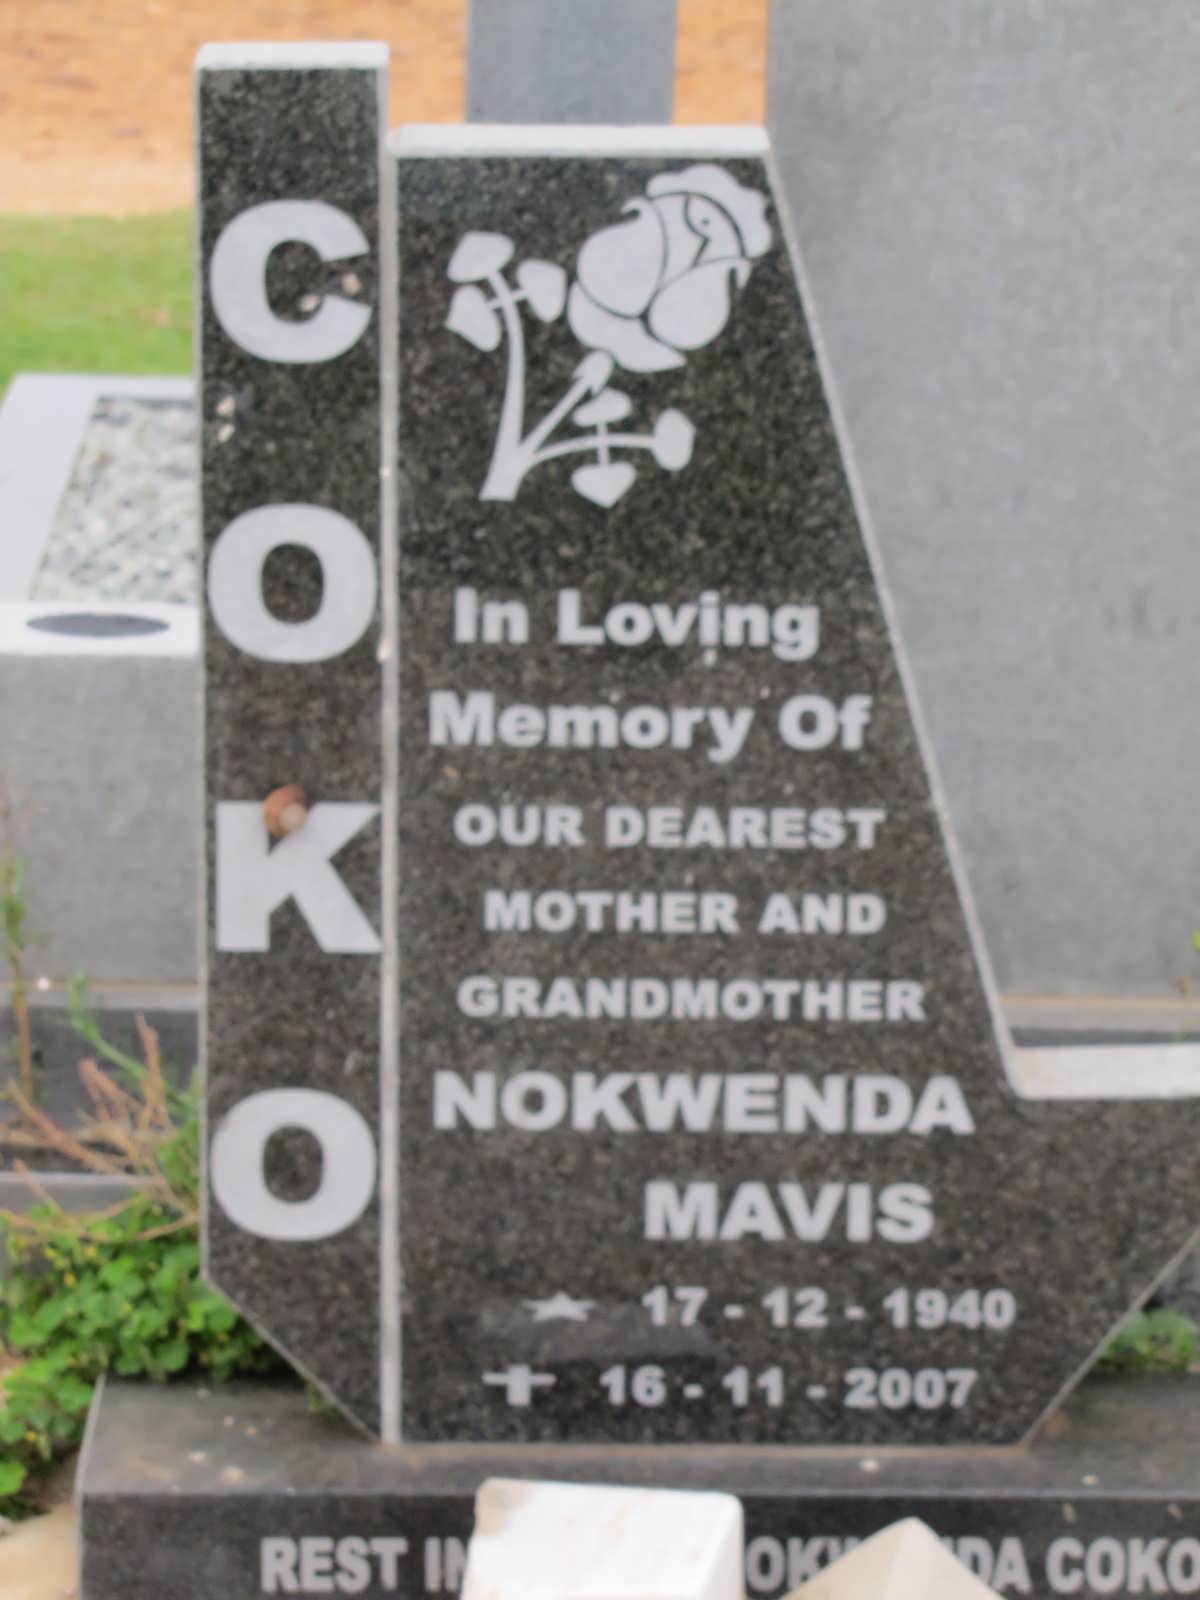 COKO Nokwenda Mavis 1940-2007